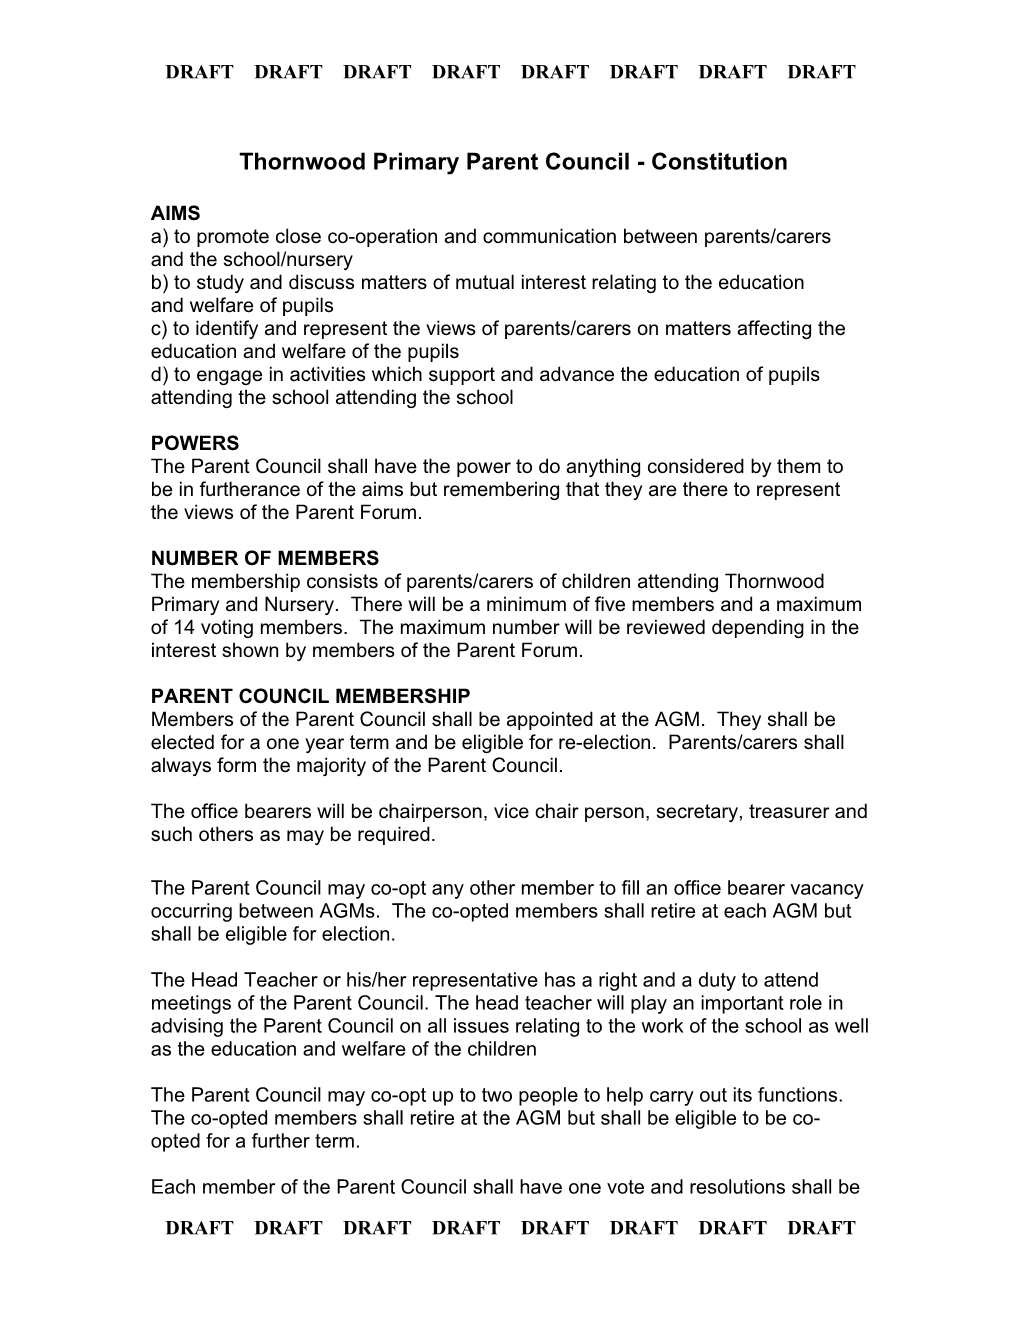 Thornwood Primary Parent Council - Constitution